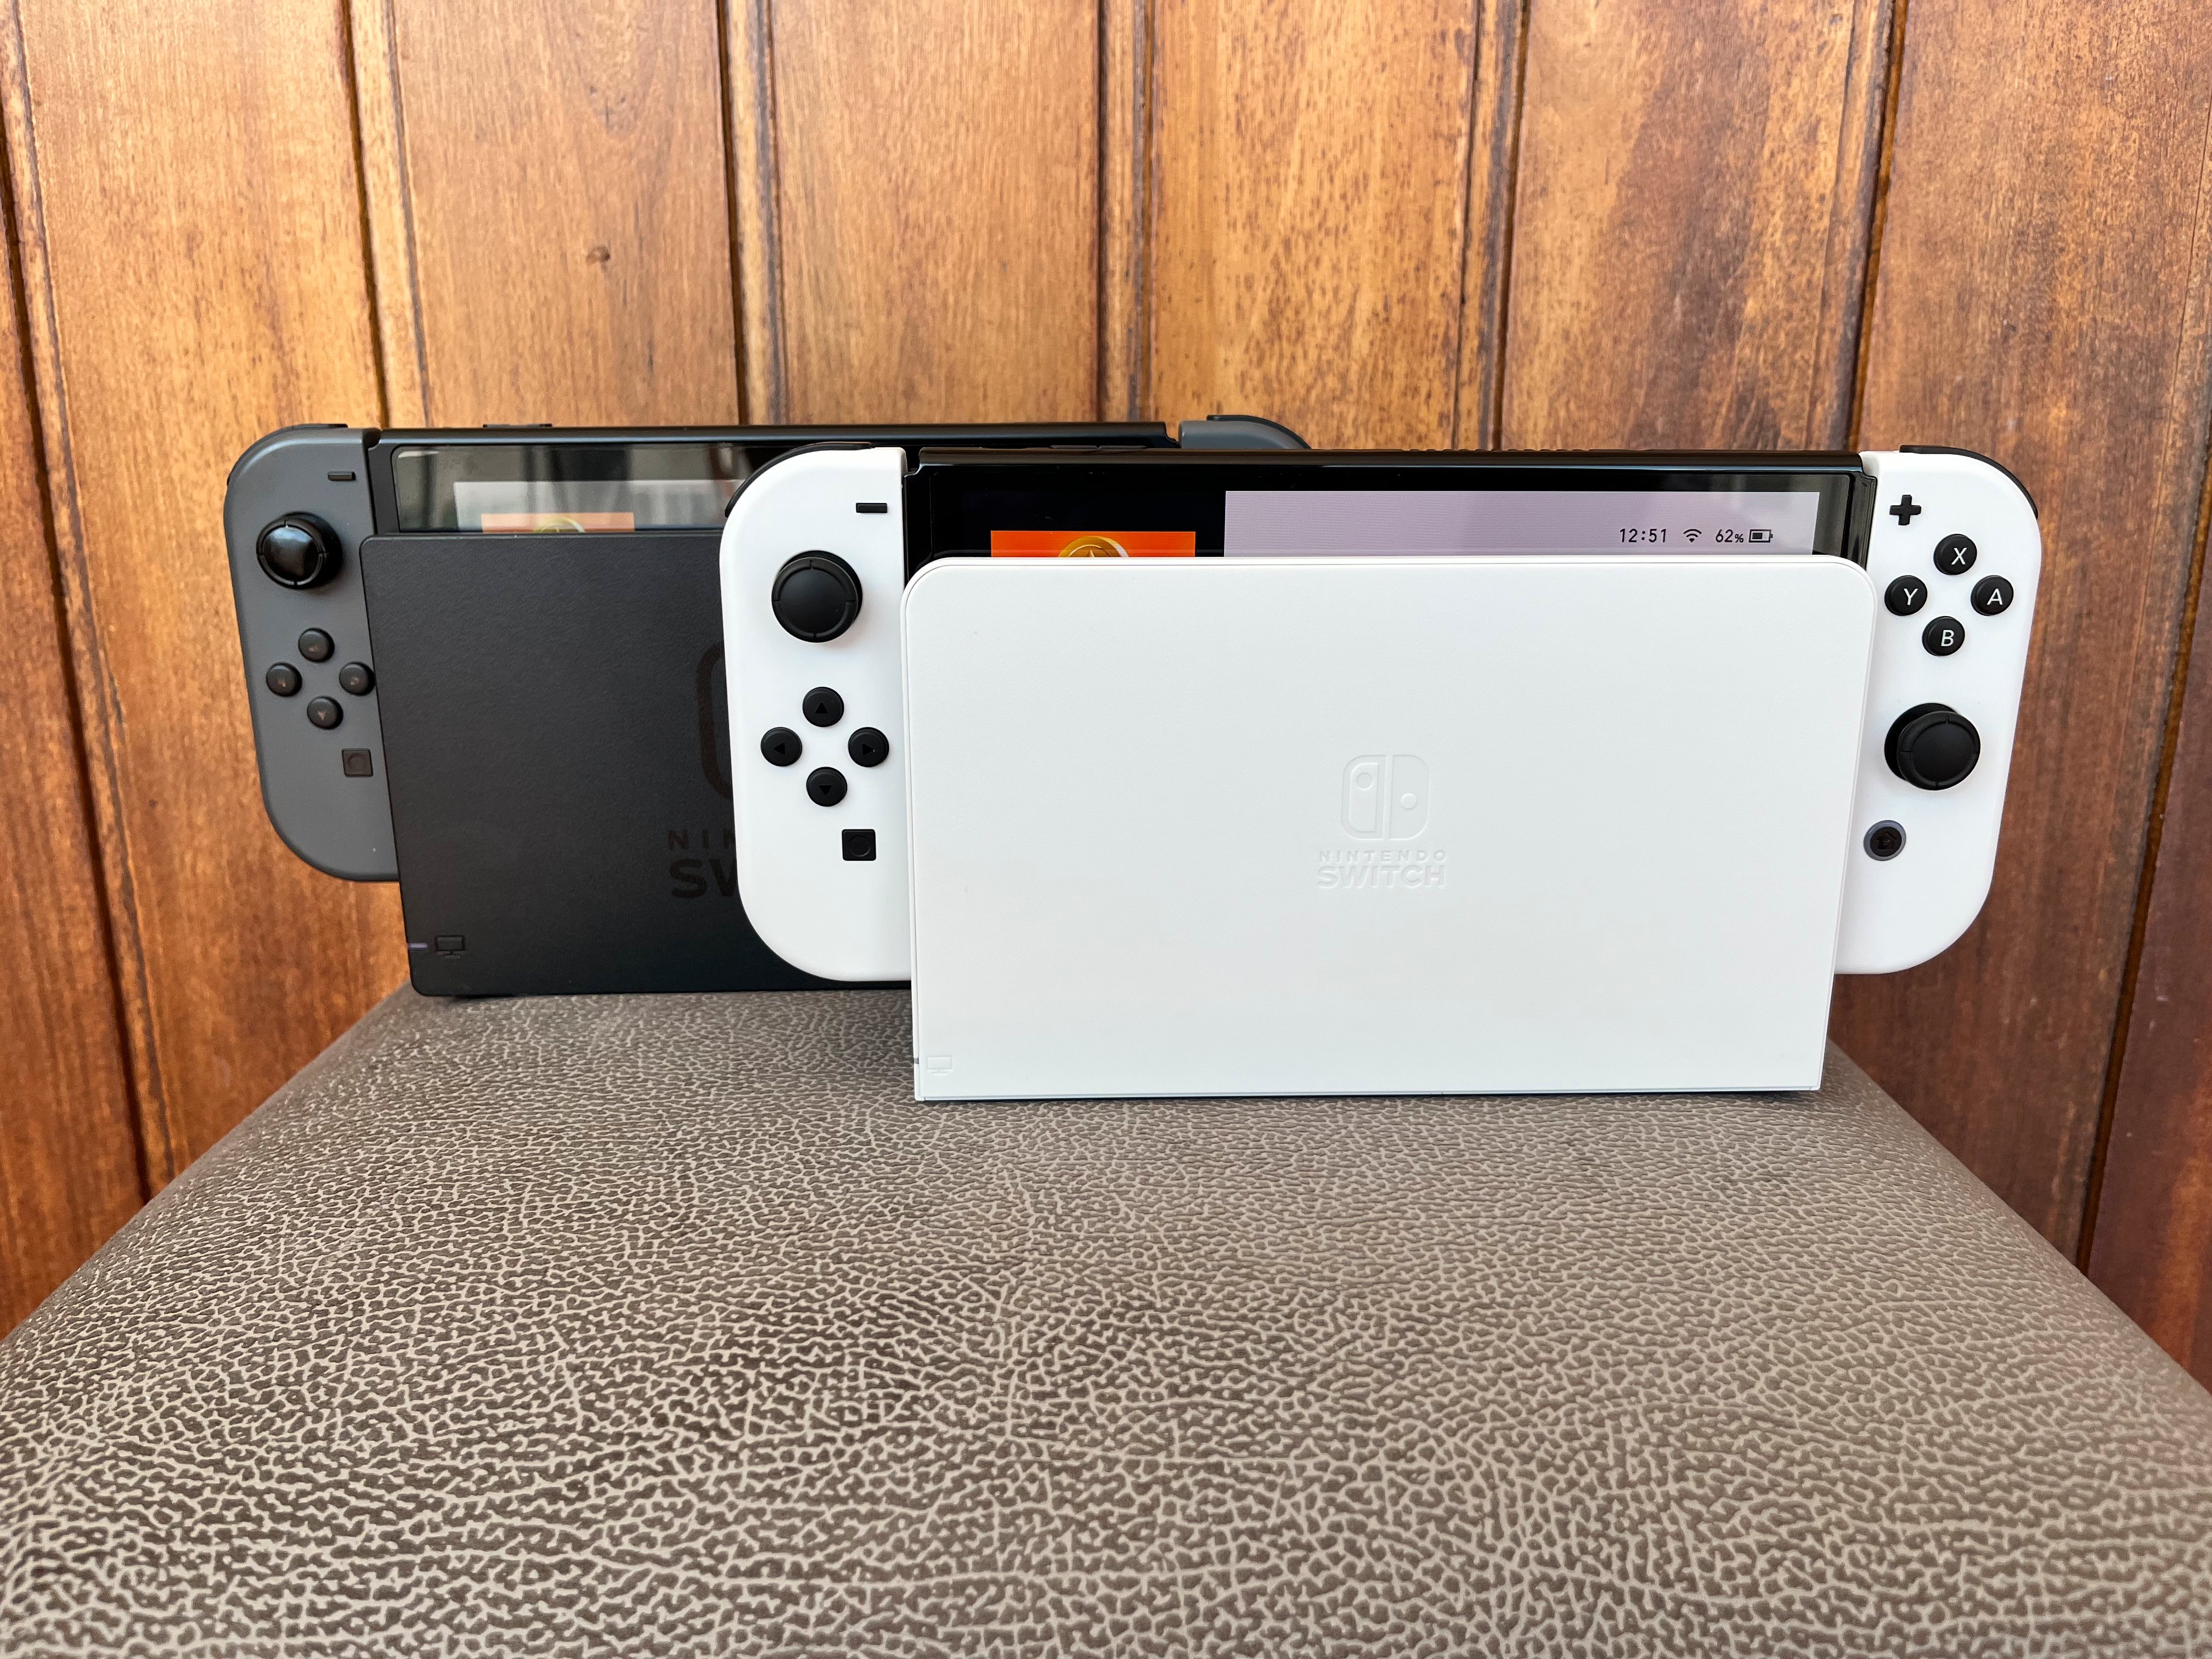 Testámos a nova Nintendo Switch OLED: vale a pena o upgrade? – Observador